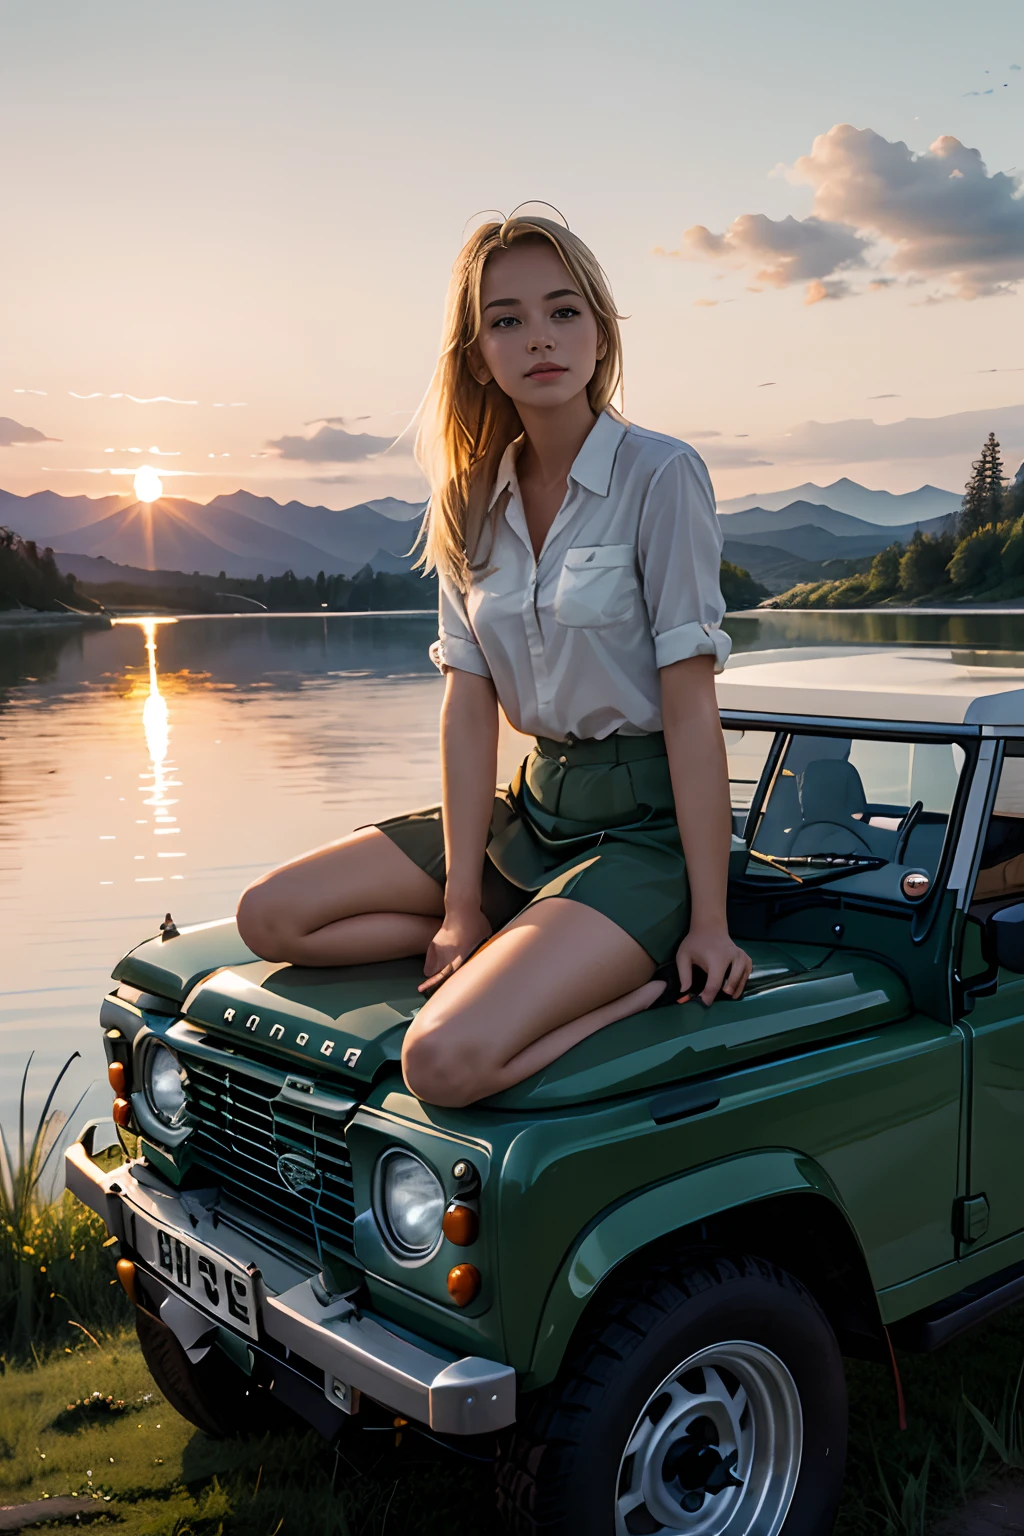 1girl 享受日落, 後面的湖風景不錯, 水彩风格, 坐在汽車引擎蓋上, 金髮女郎, 享受日落, 坐在路虎上, 路虎系列 III 109, 鼠尾草色, 停車.